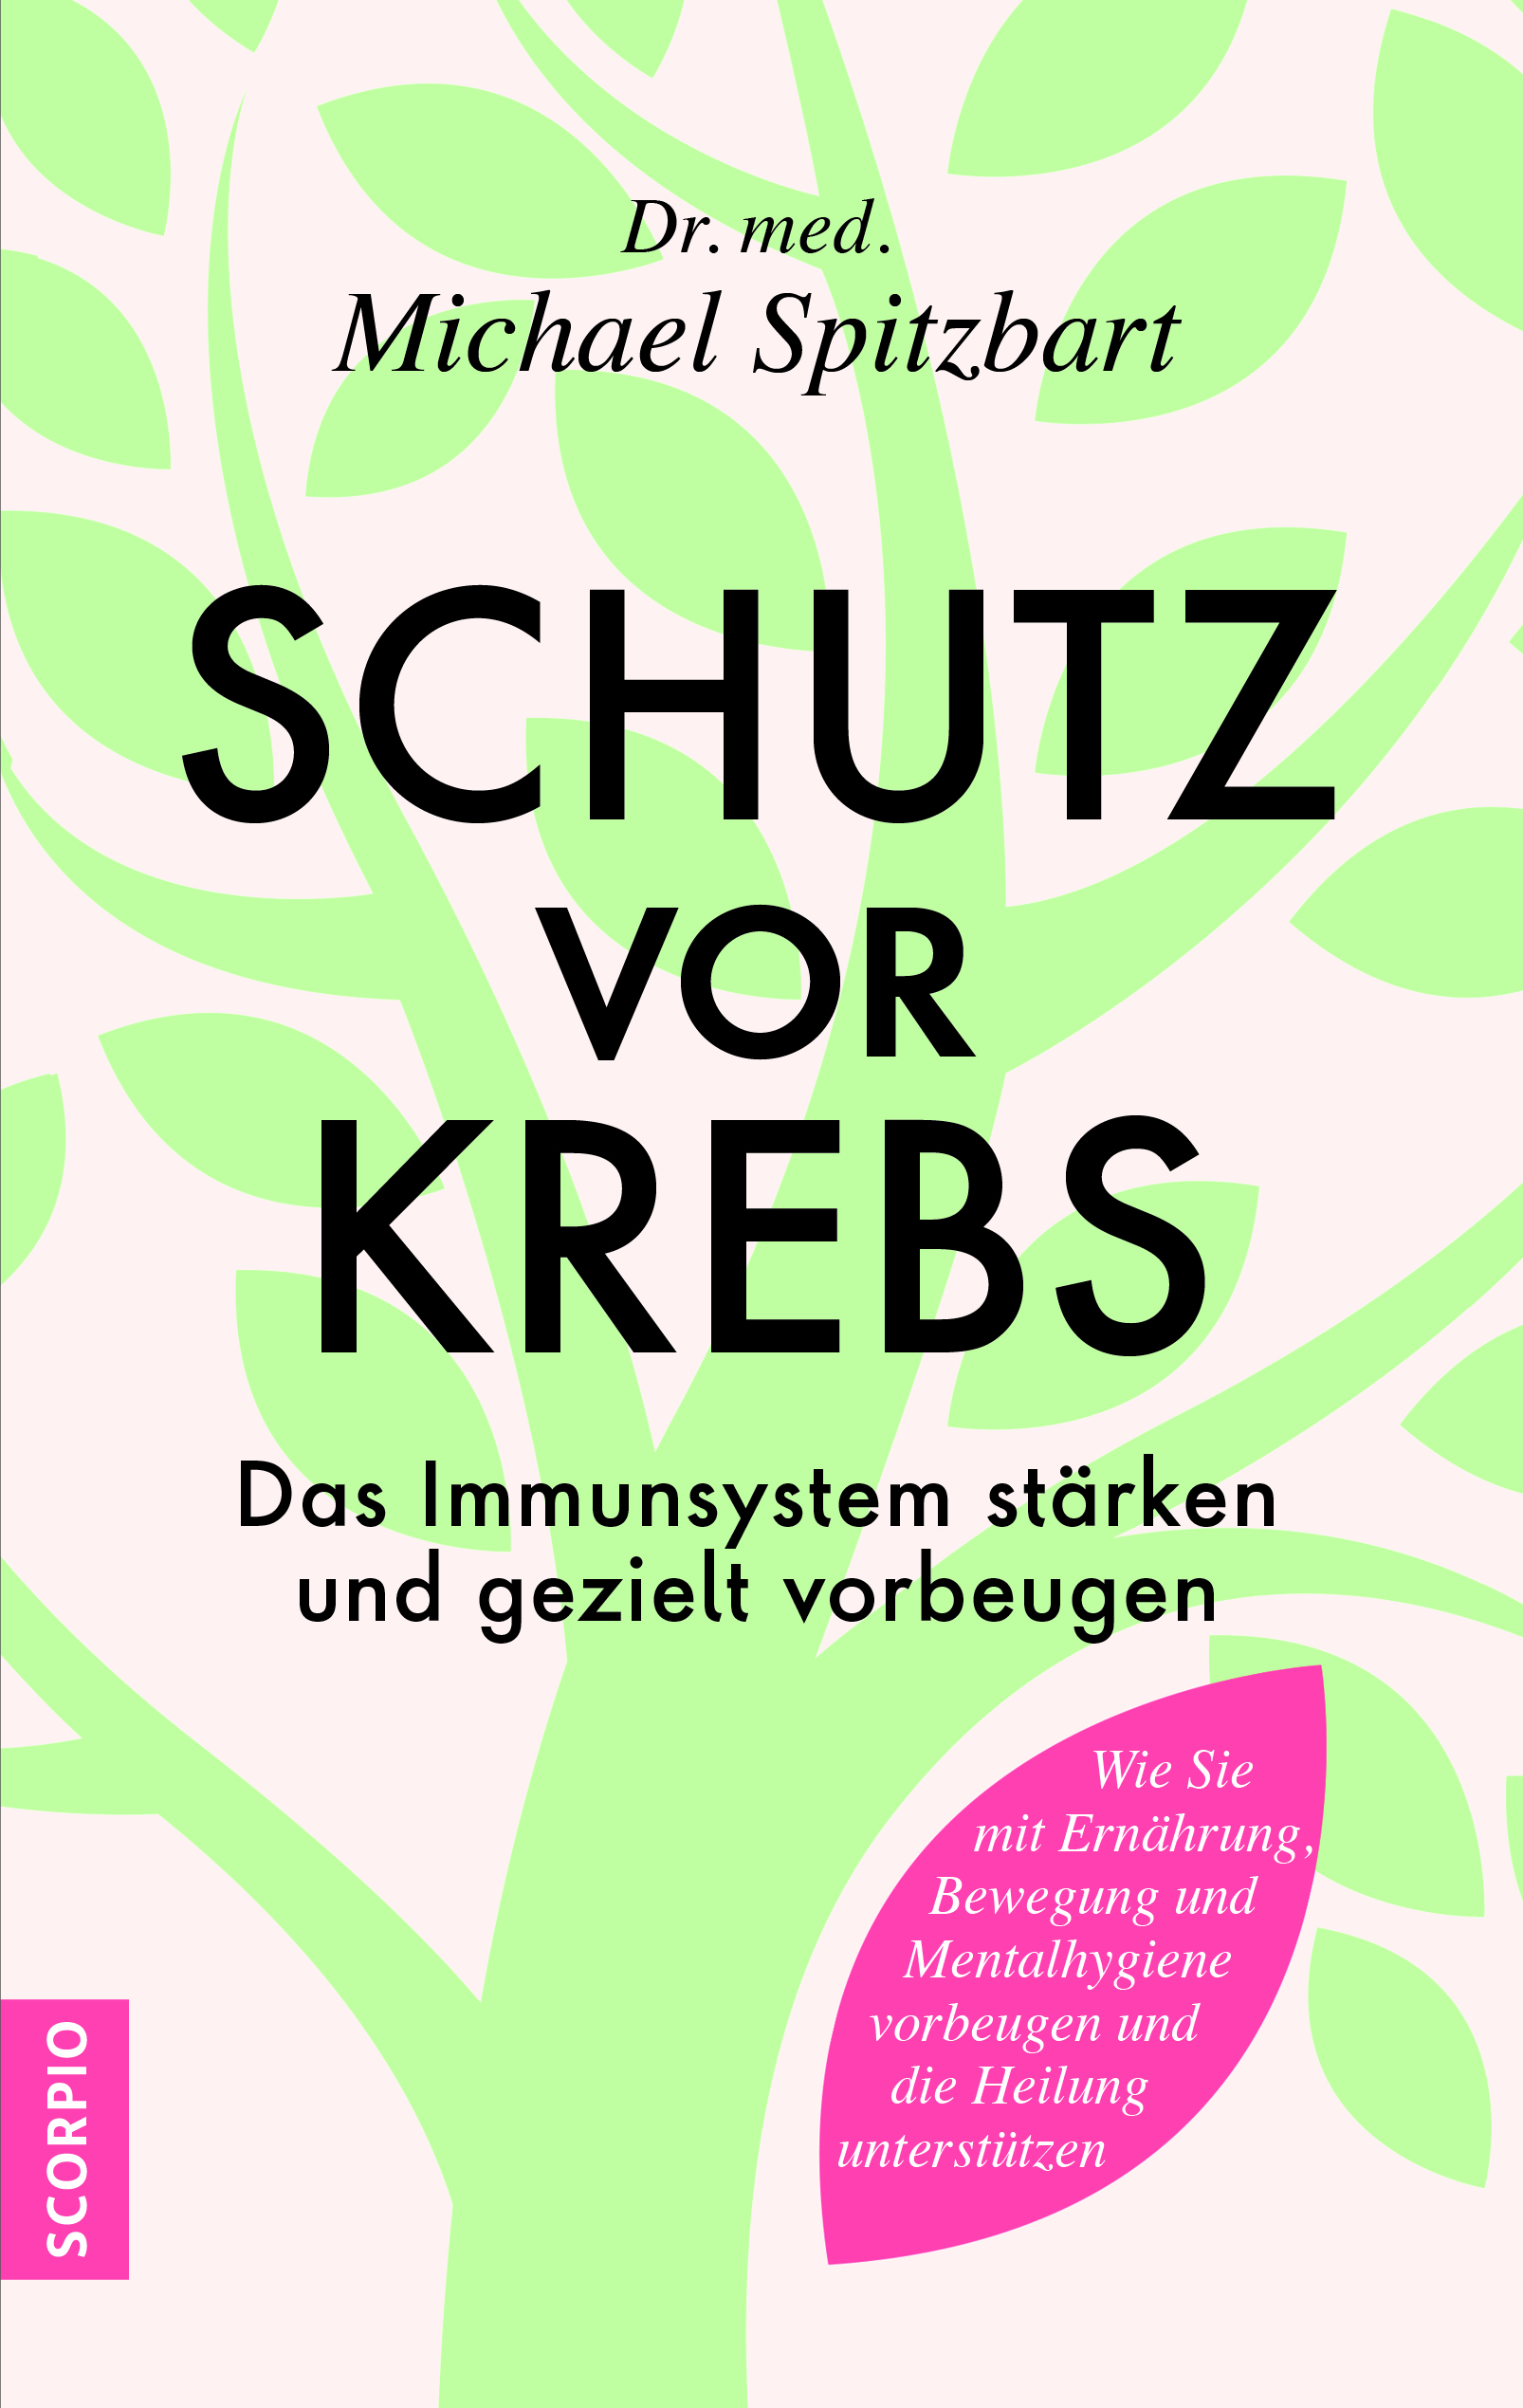 Michael Spitzbart: Schutz vor Krebs (Paperback, deutsch language, 2022, Scorpio Verlag)